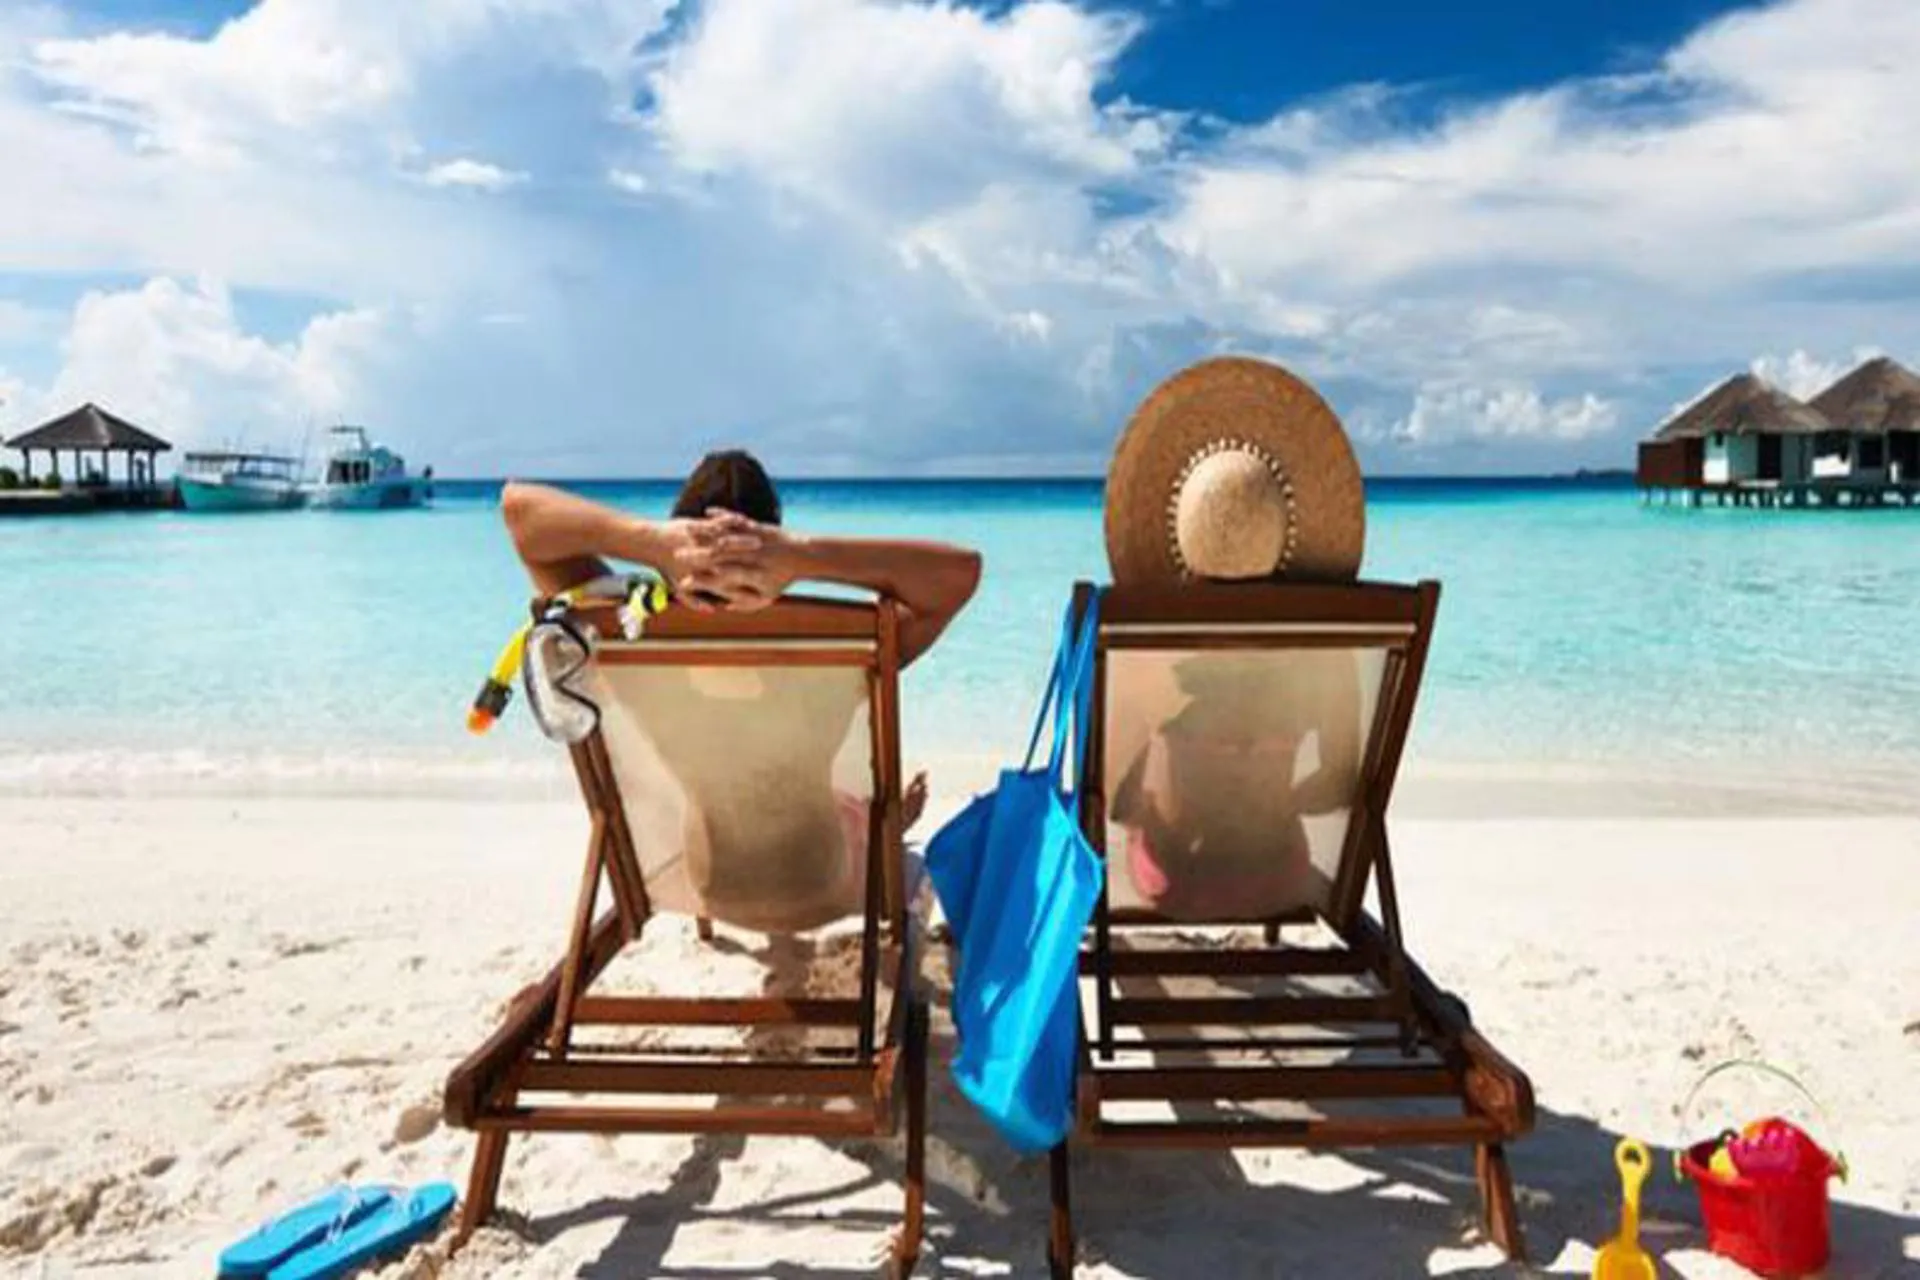 Encuesta: 62% de los viajeros eligen "no hacer nada" en sus vacaciones 